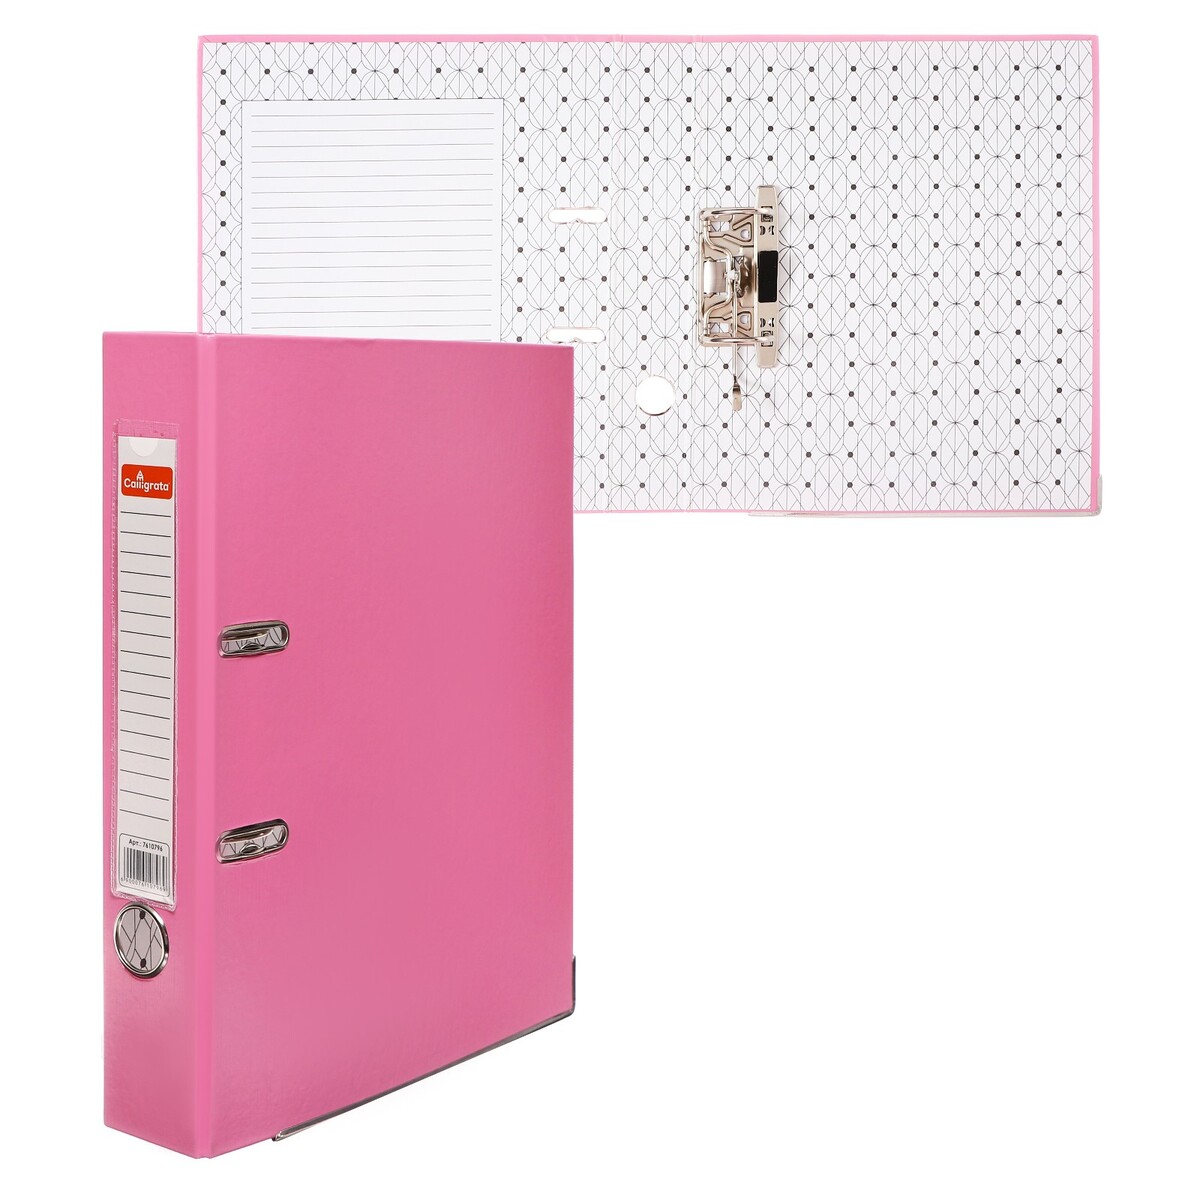 Папка-регистратор а4, 50 мм, calligrata, полипропилен, металлическая окантовка, карман на корешок, собранная, розовая папка с 30 вкладышами а4 500 мкм calligrata 15 мм розовая